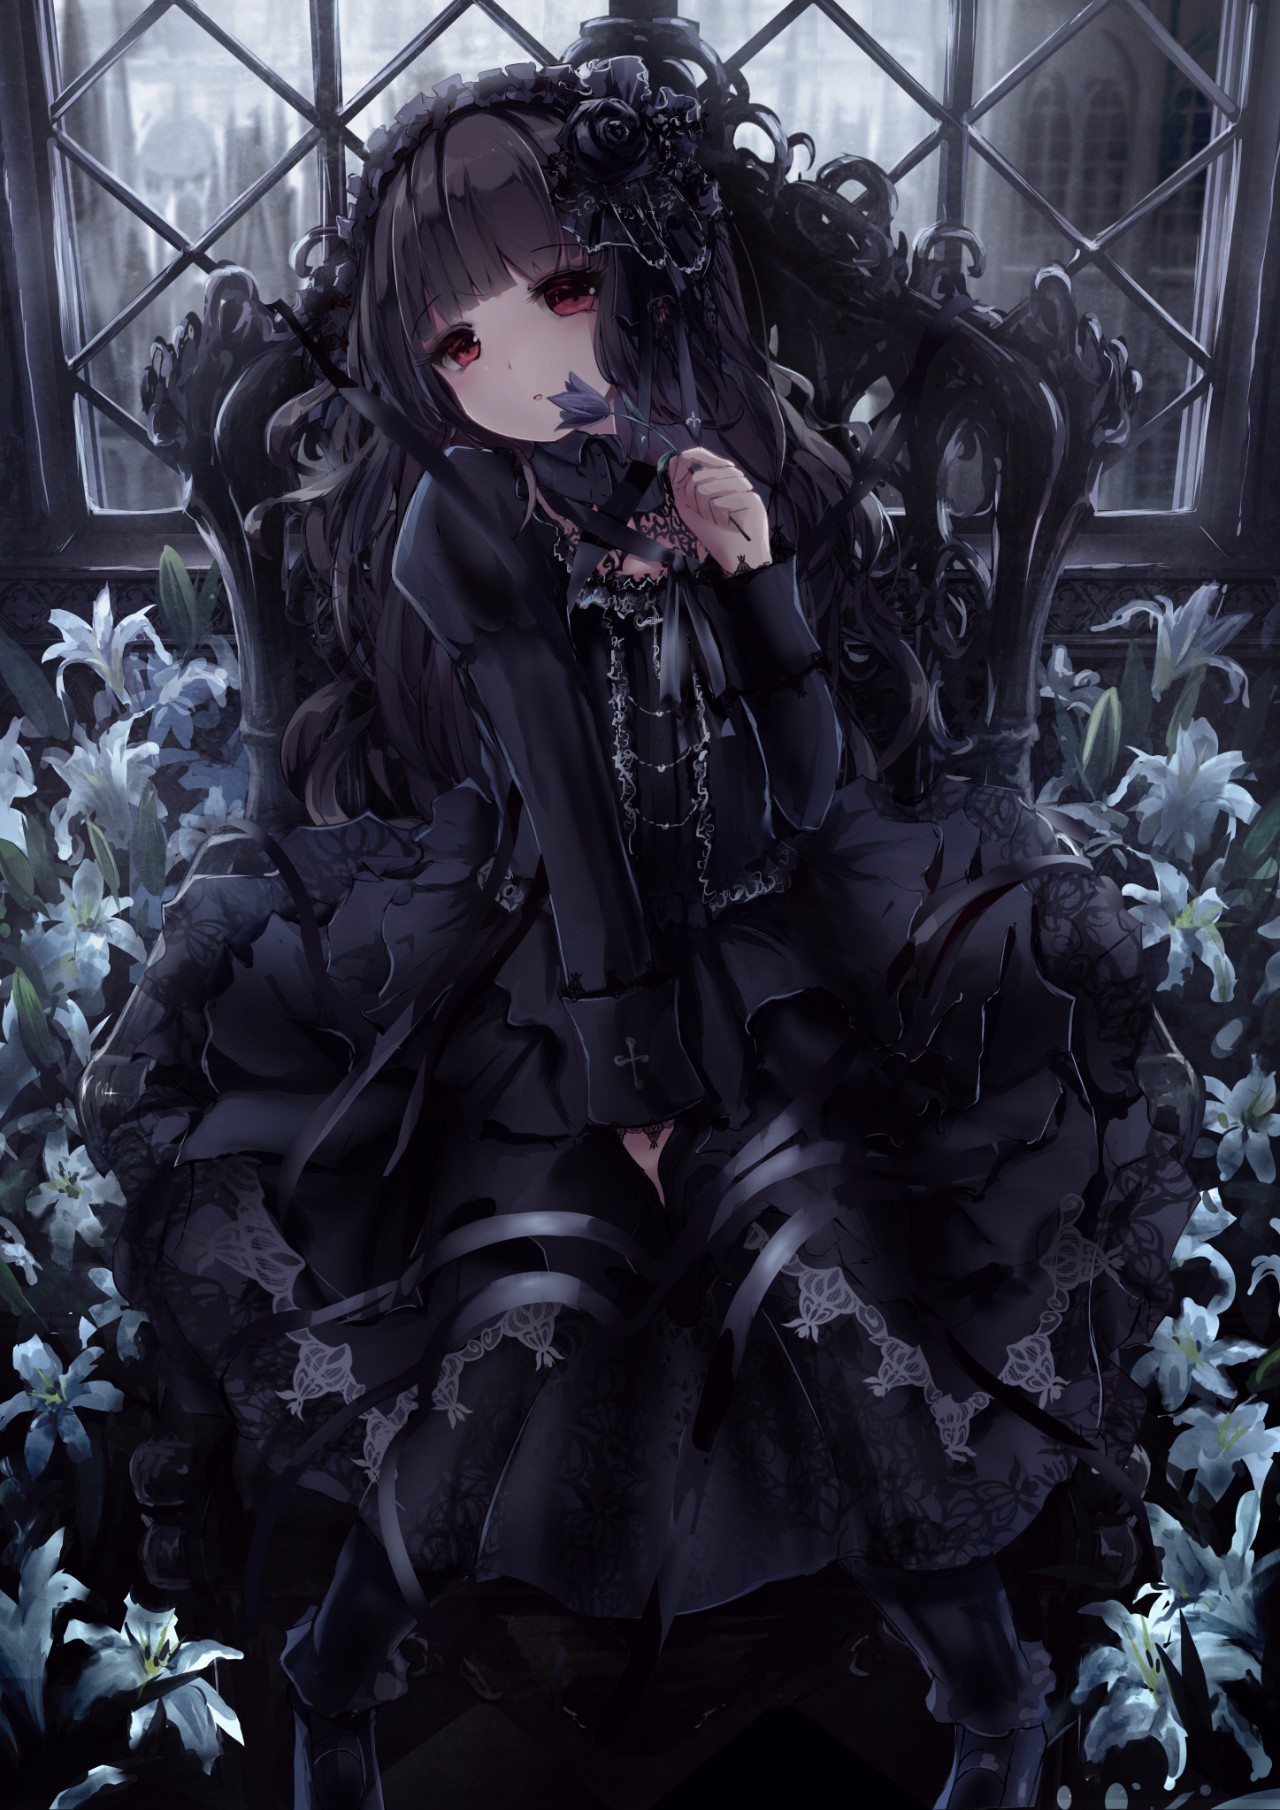 动漫 正文  哥特萝莉(gothic lolita)的服饰,以黑暗风格和哥特忧郁